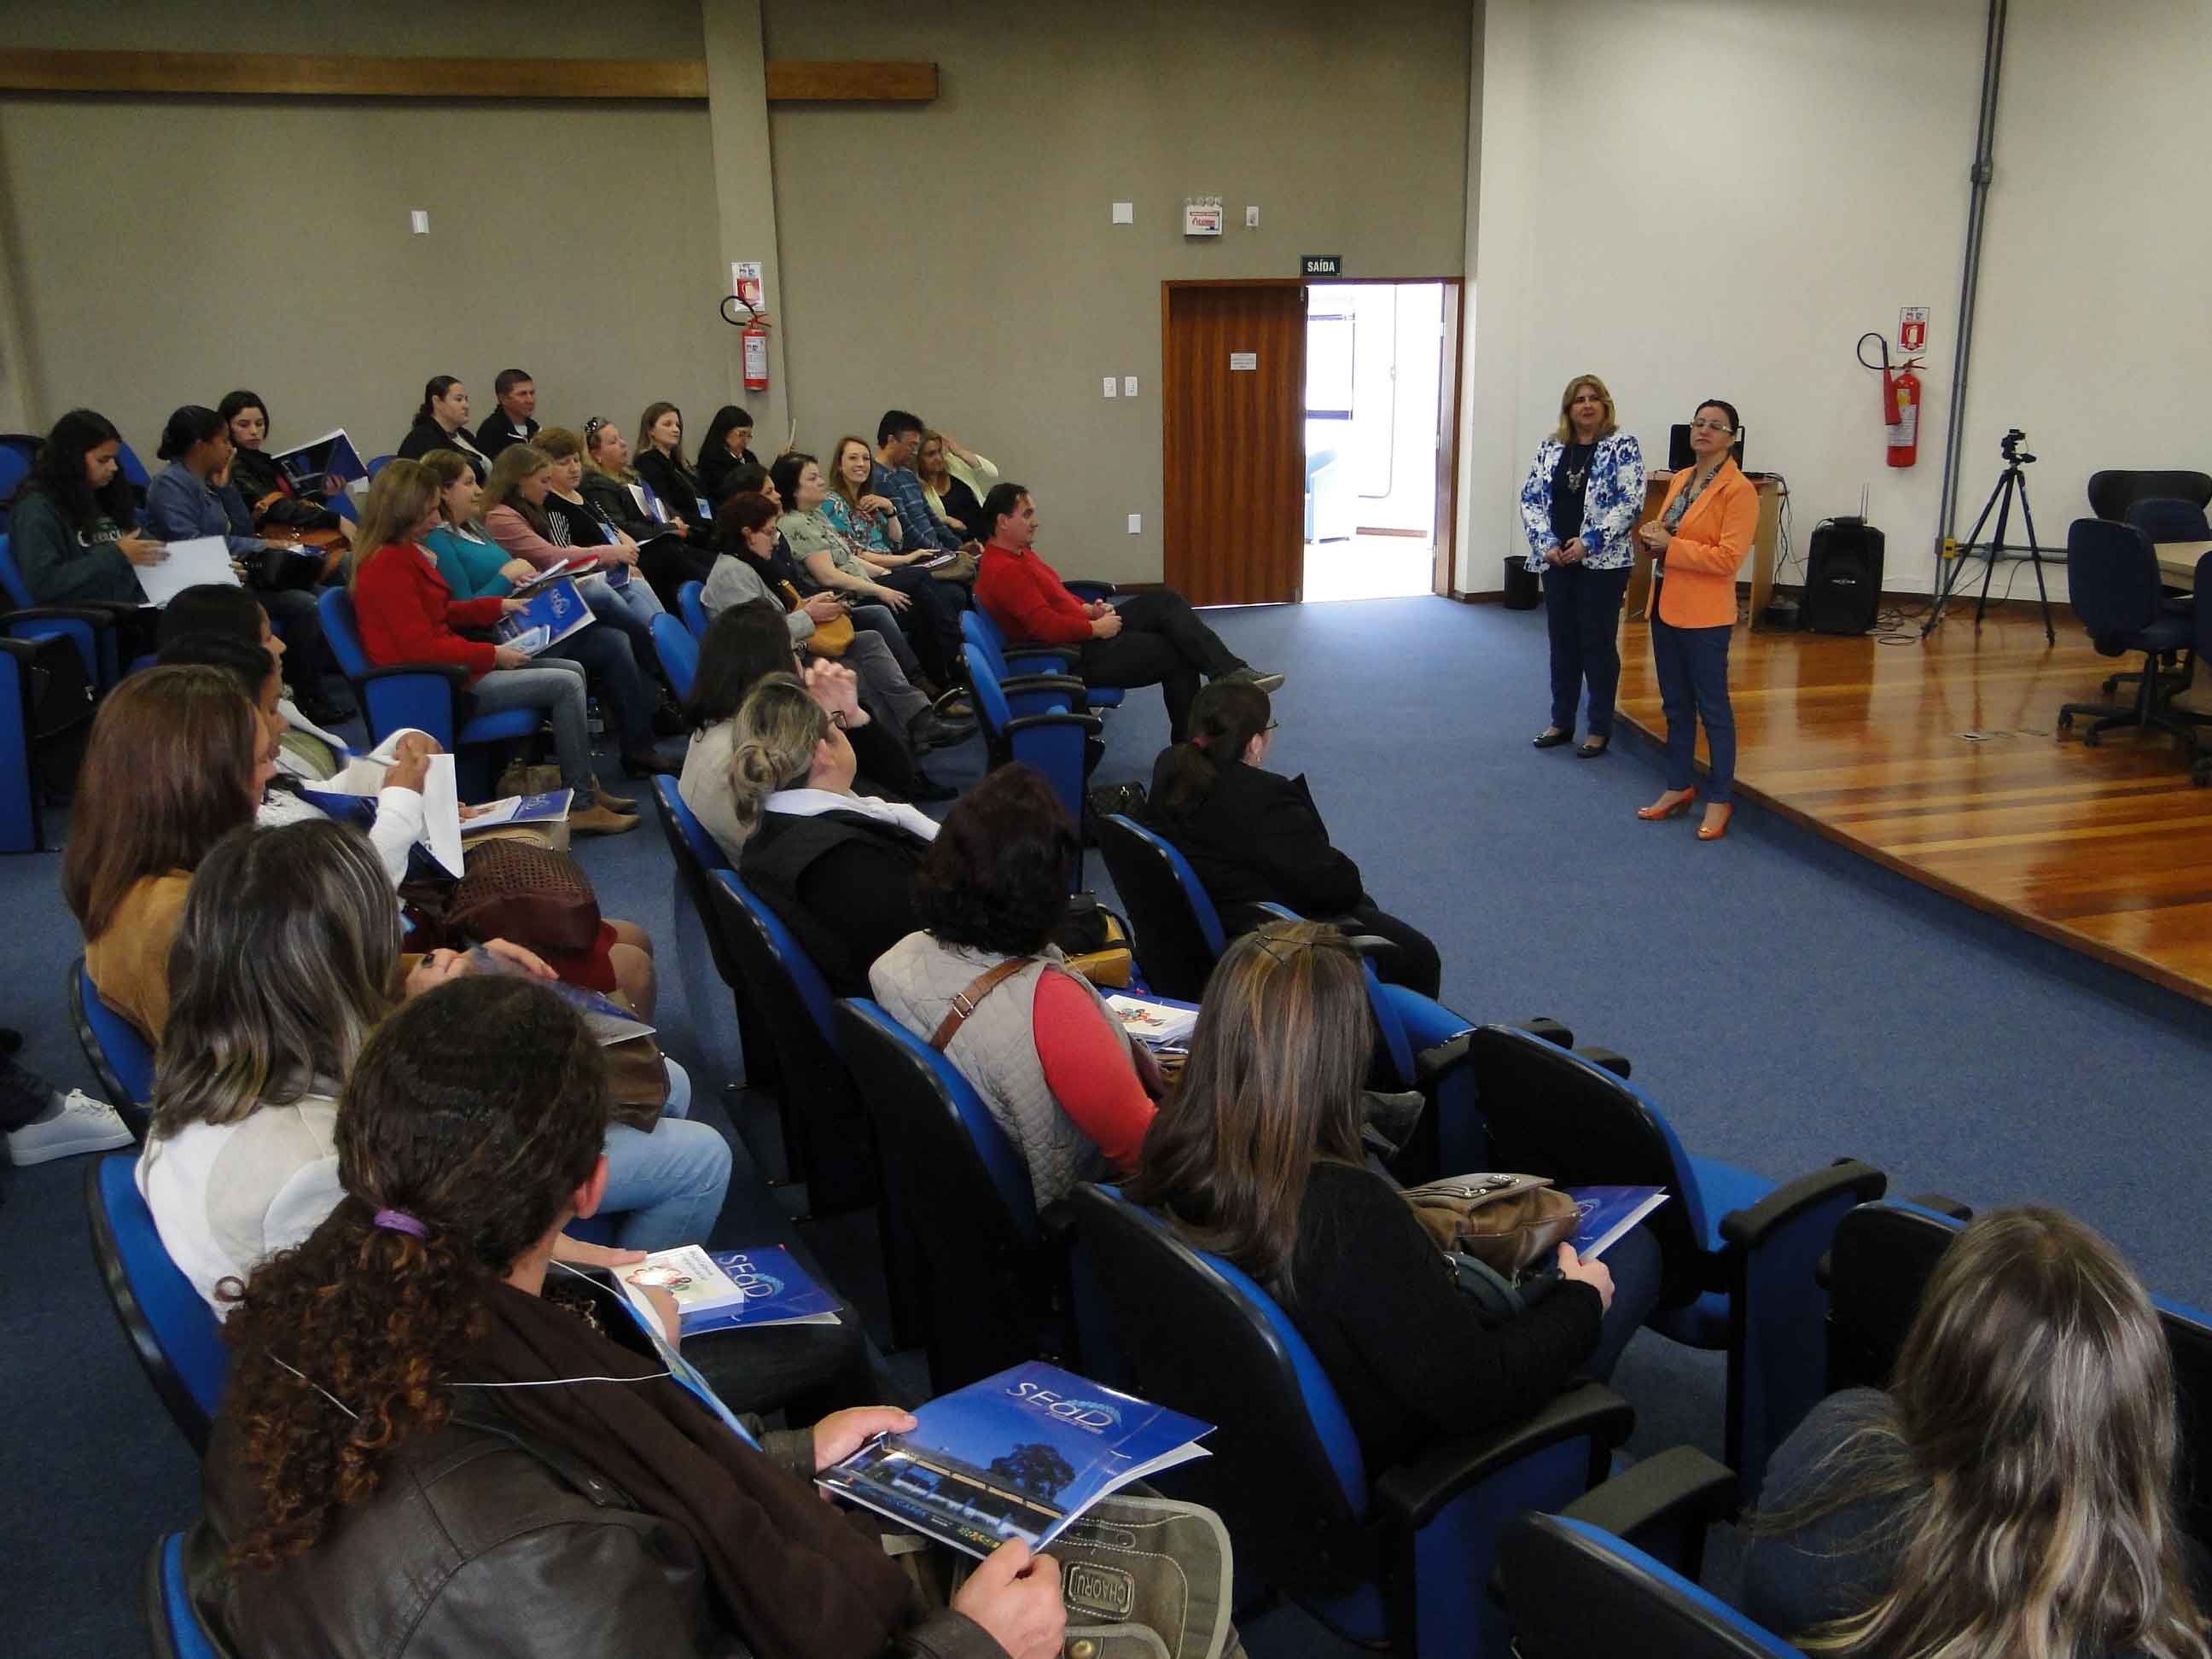 Estudantes dos polos de Mostardas, São Lourenço do Sul e Santa Vitória do Palmar foram recepcionados na SeaD - Créditos foto: Tammie Faria Sandri